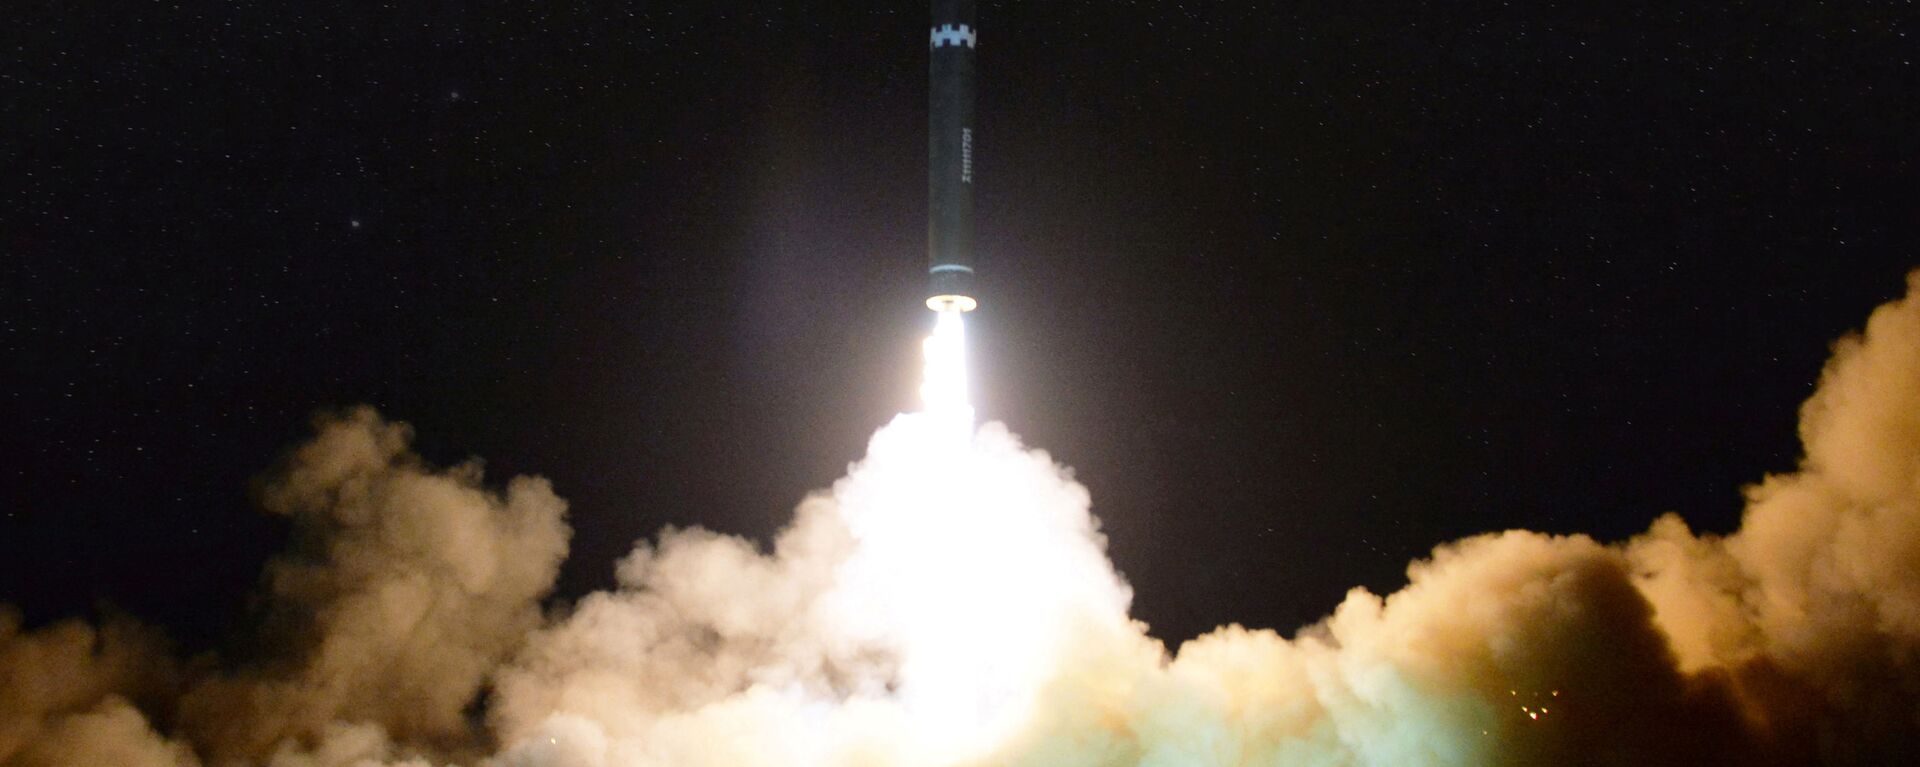 اطلاق صاروخ باليستي - بيونغ يانغ - كوريا الشمالية 29 نوفمبر/ تشرين الثاني 2017 - سبوتنيك عربي, 1920, 10.03.2022